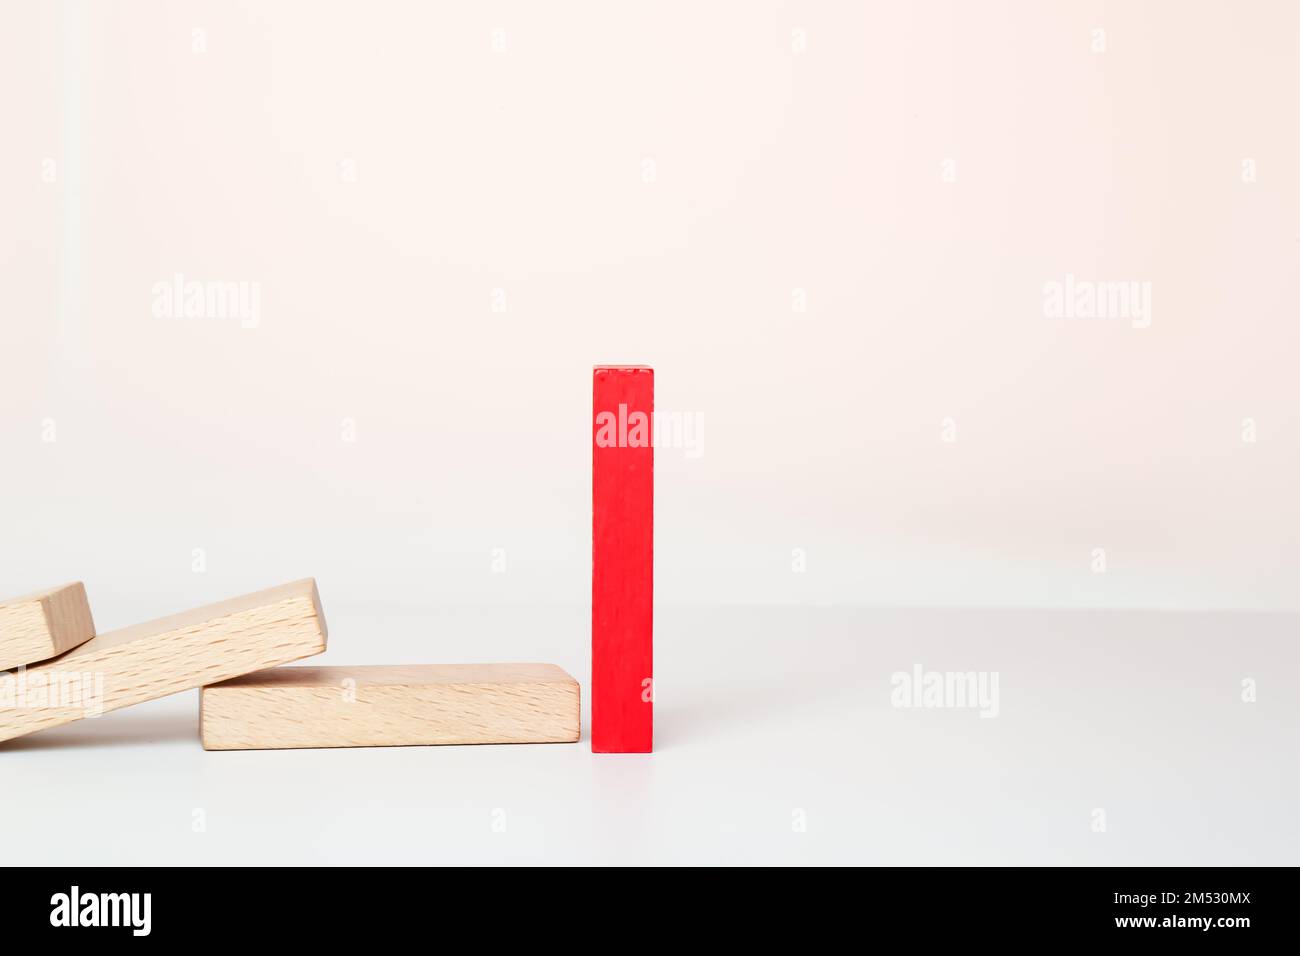 Un domino rosso si alza, e altre domino di legno cadono in fila. Reazione a catena, effetto domino su sfondo bianco. Foto Stock